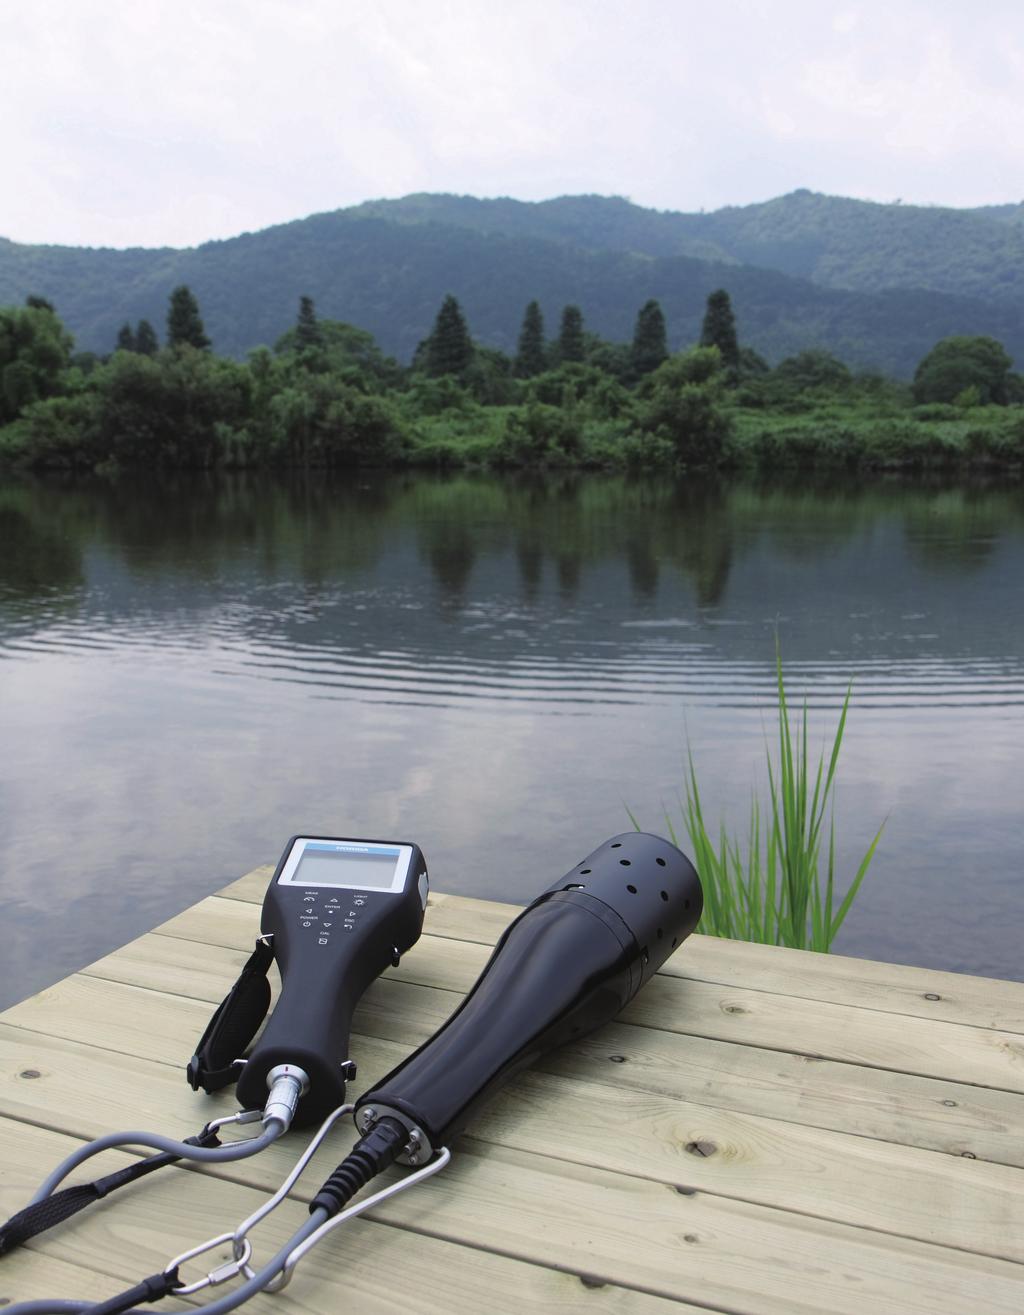 Diseño robusto para el campo 11 parámetros 5 idiomas Ingles Japonés Sonda multiparamétrica de análisis de calidad de agua Rango U50 Ruso Español Portugués Sonda